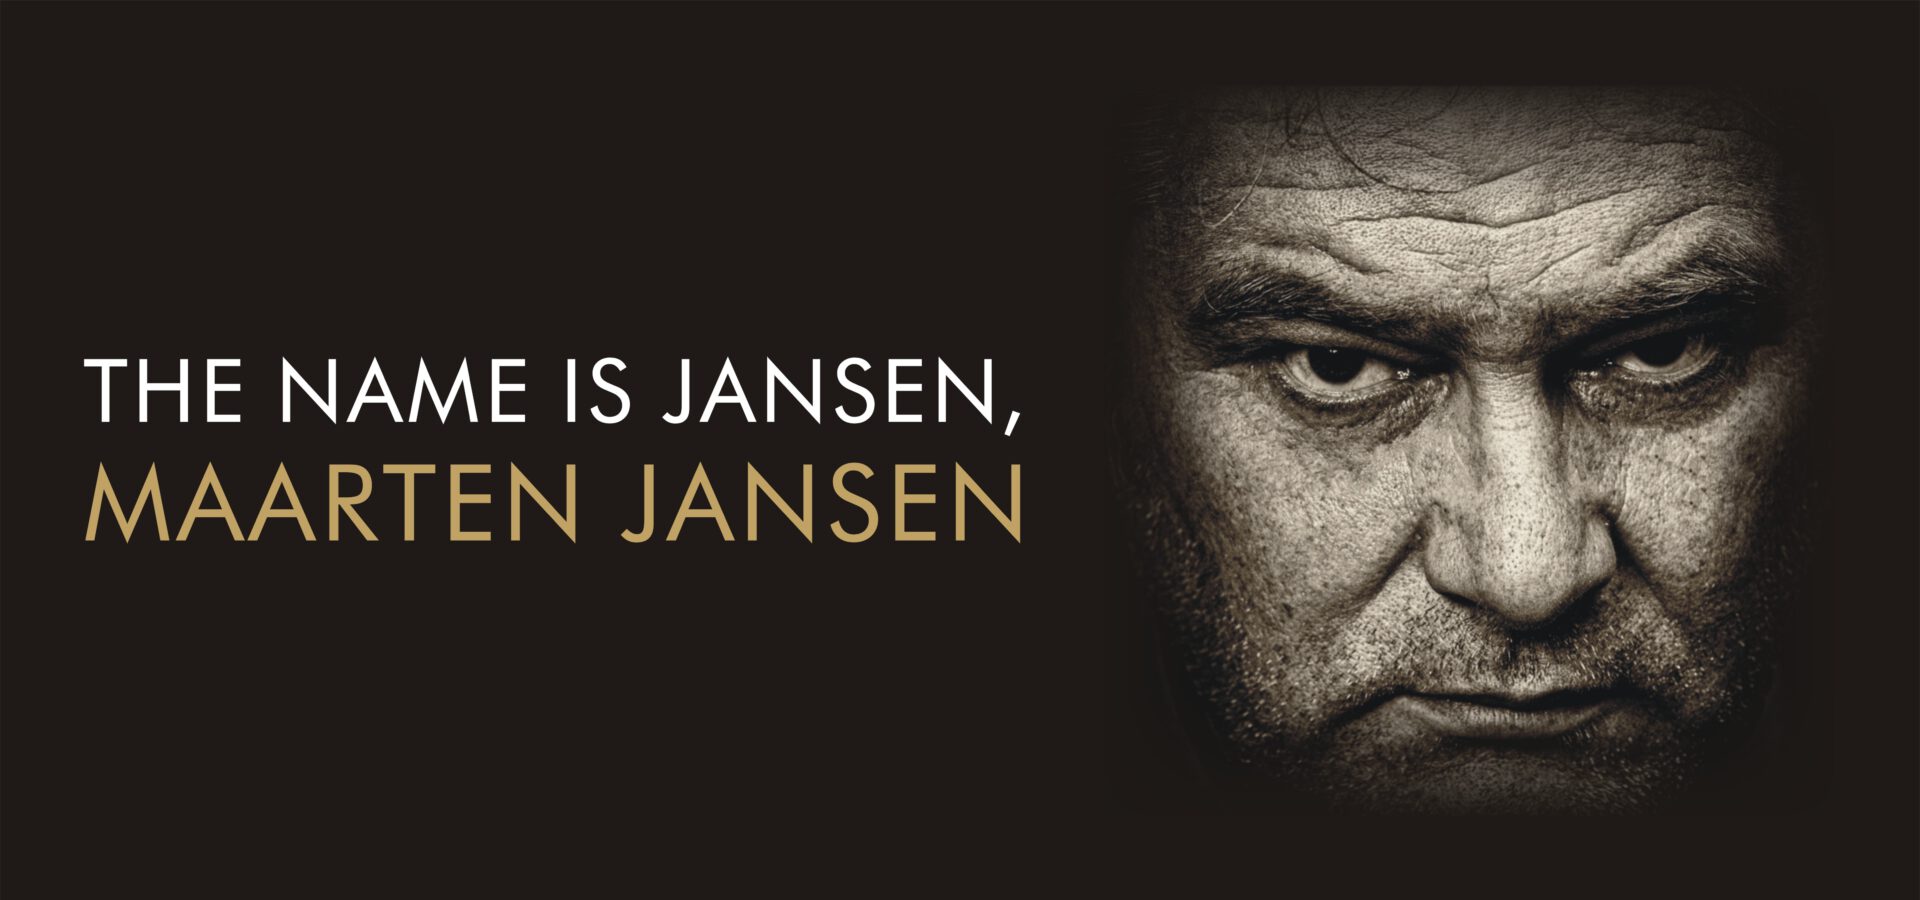 Maarten Jansen